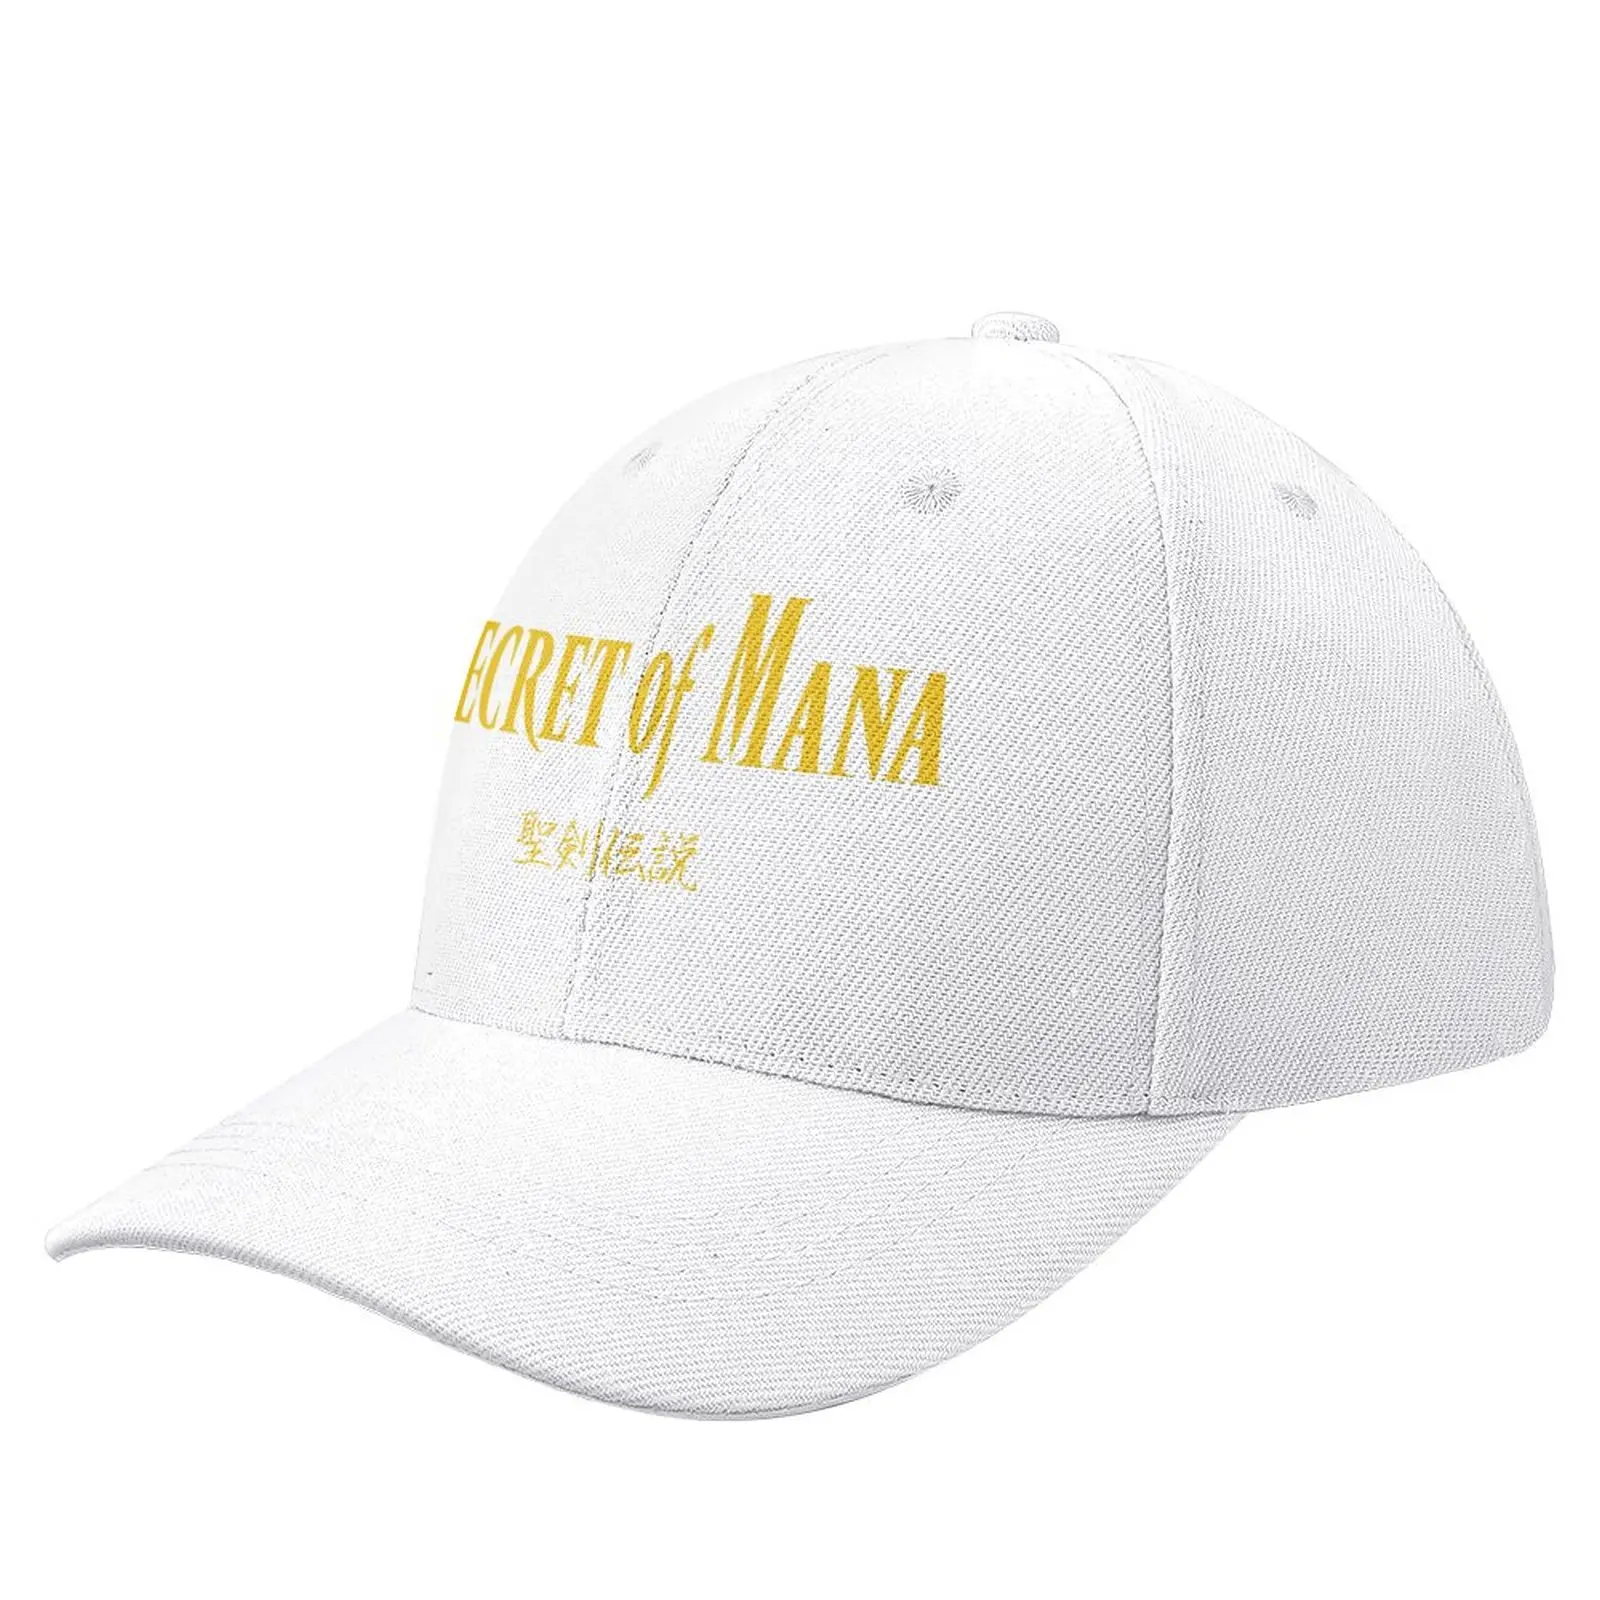 

Secret of Mana Japanese Text Baseball Cap Sunscreen |-F-| Luxury Brand hiking hat Trucker Hats For Men Women's